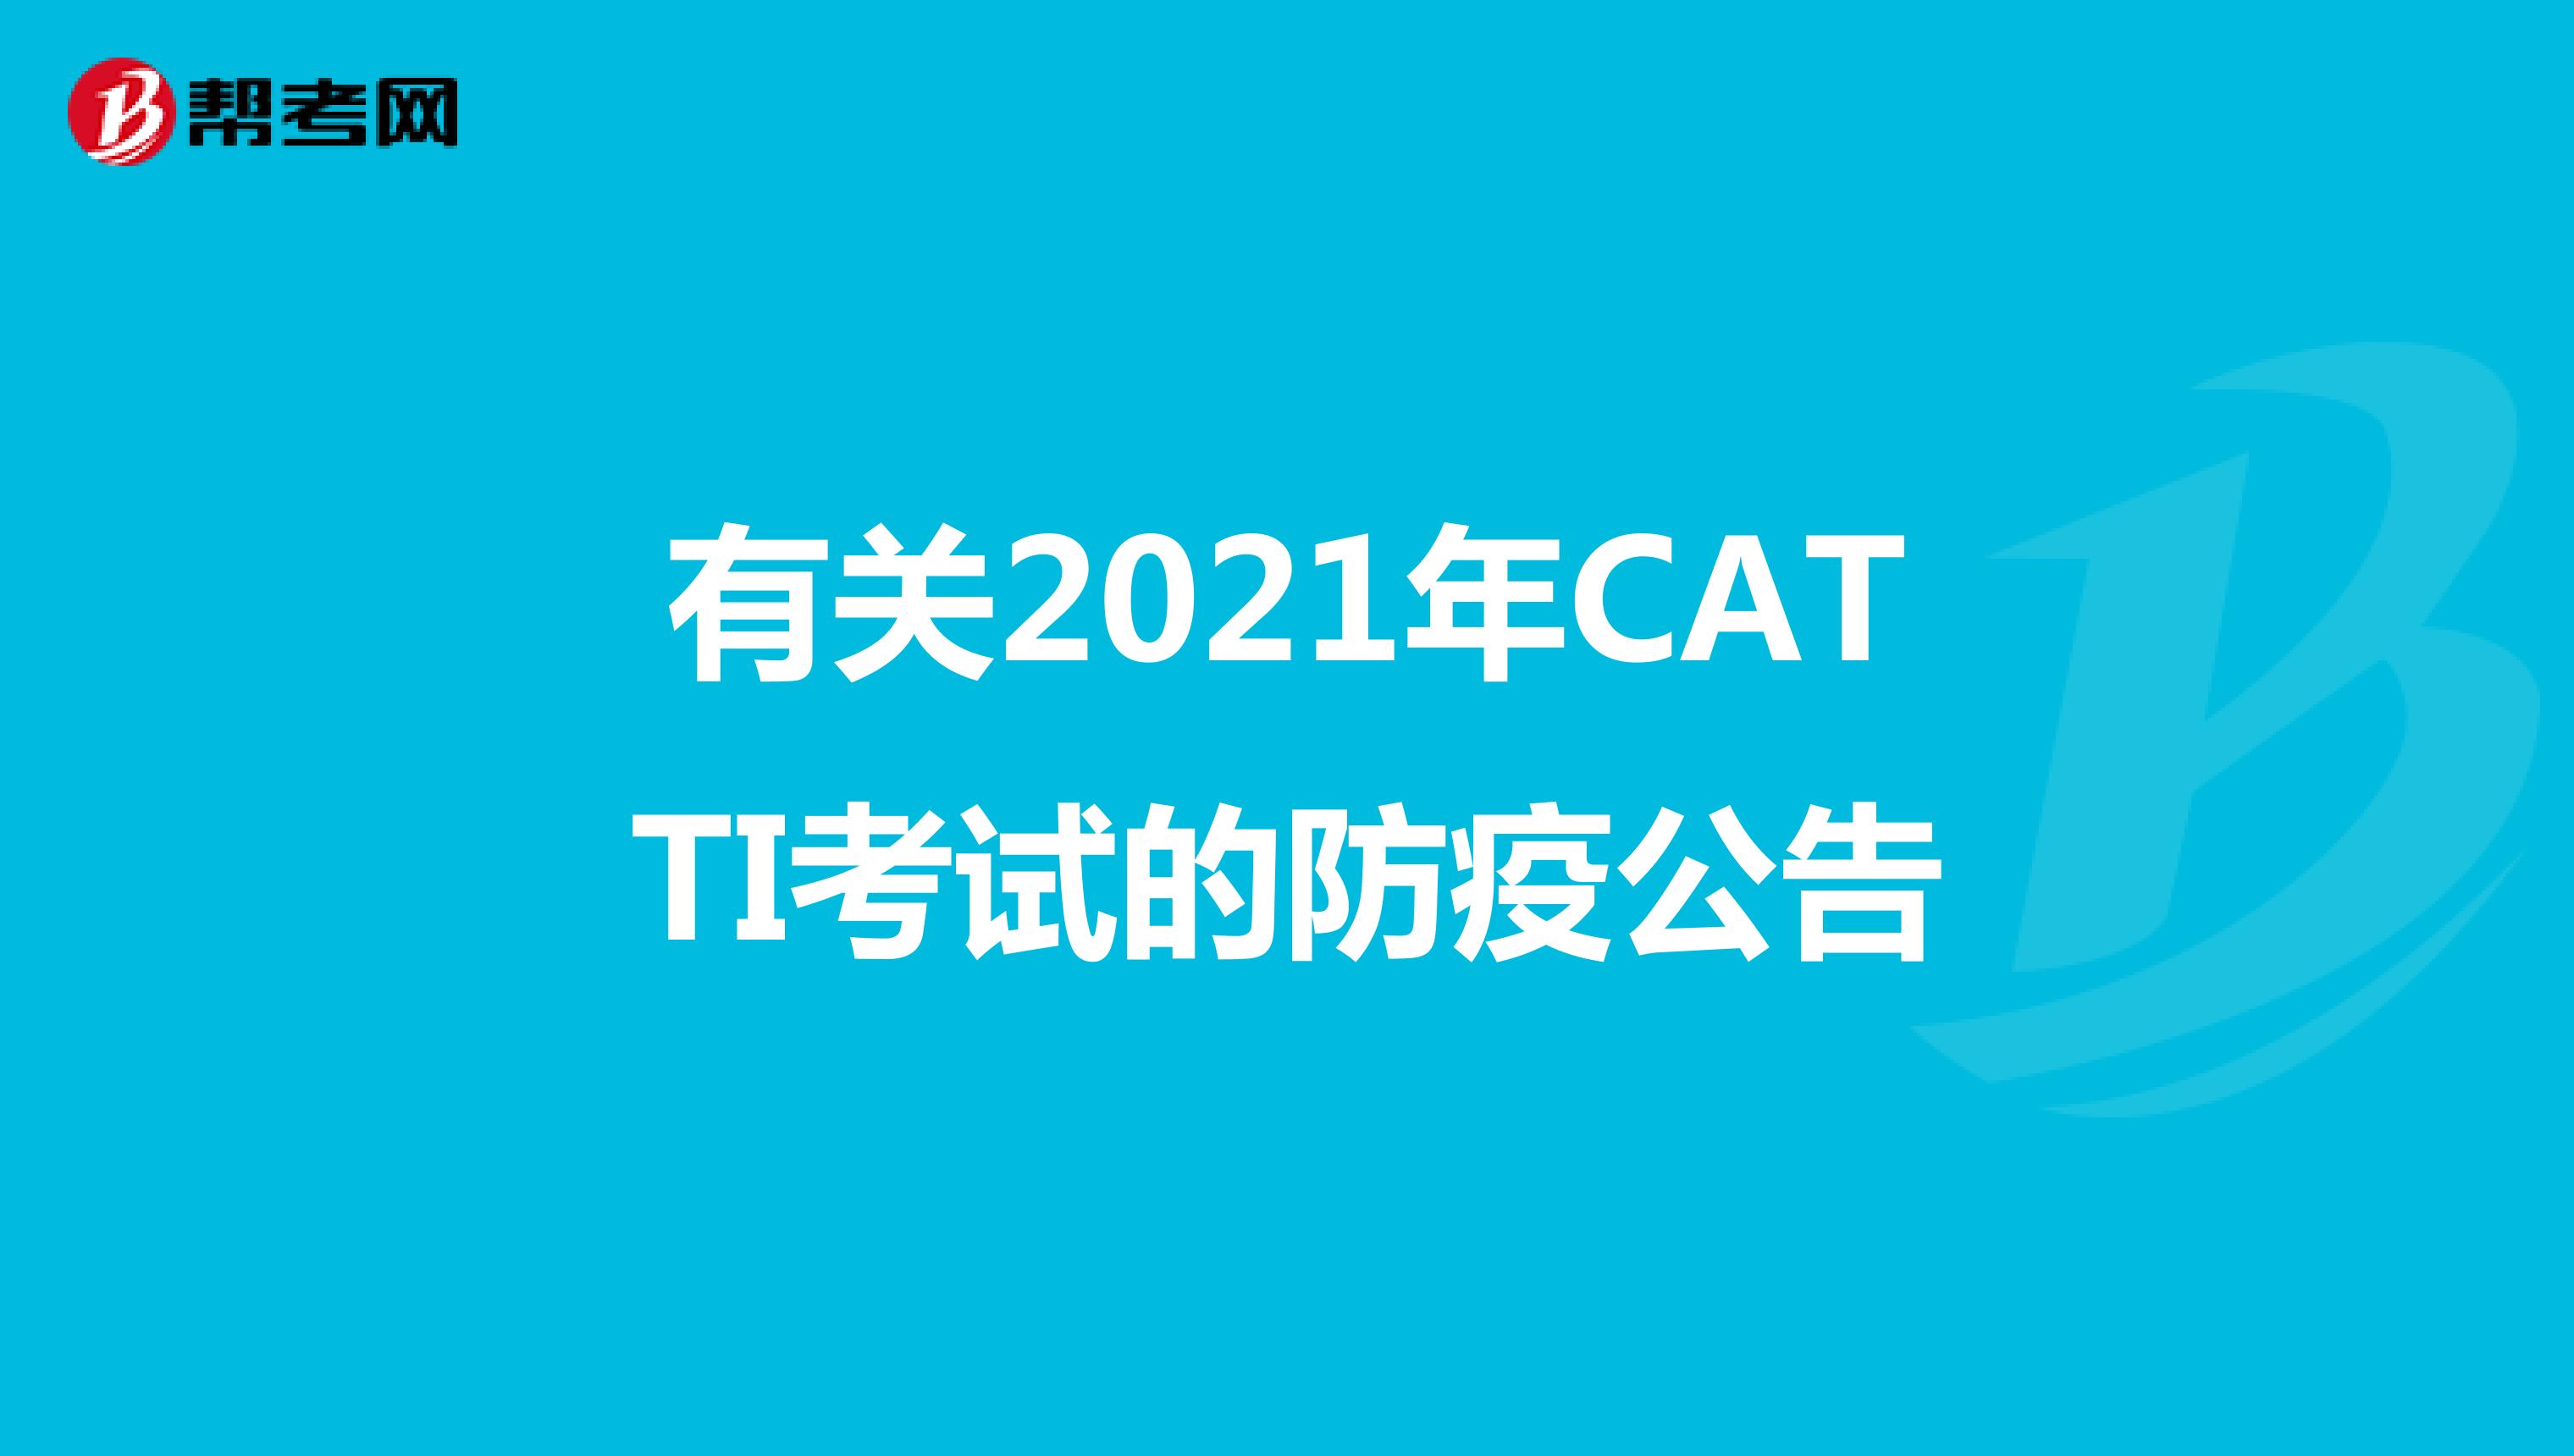 有关2021年CATTI考试的防疫公告